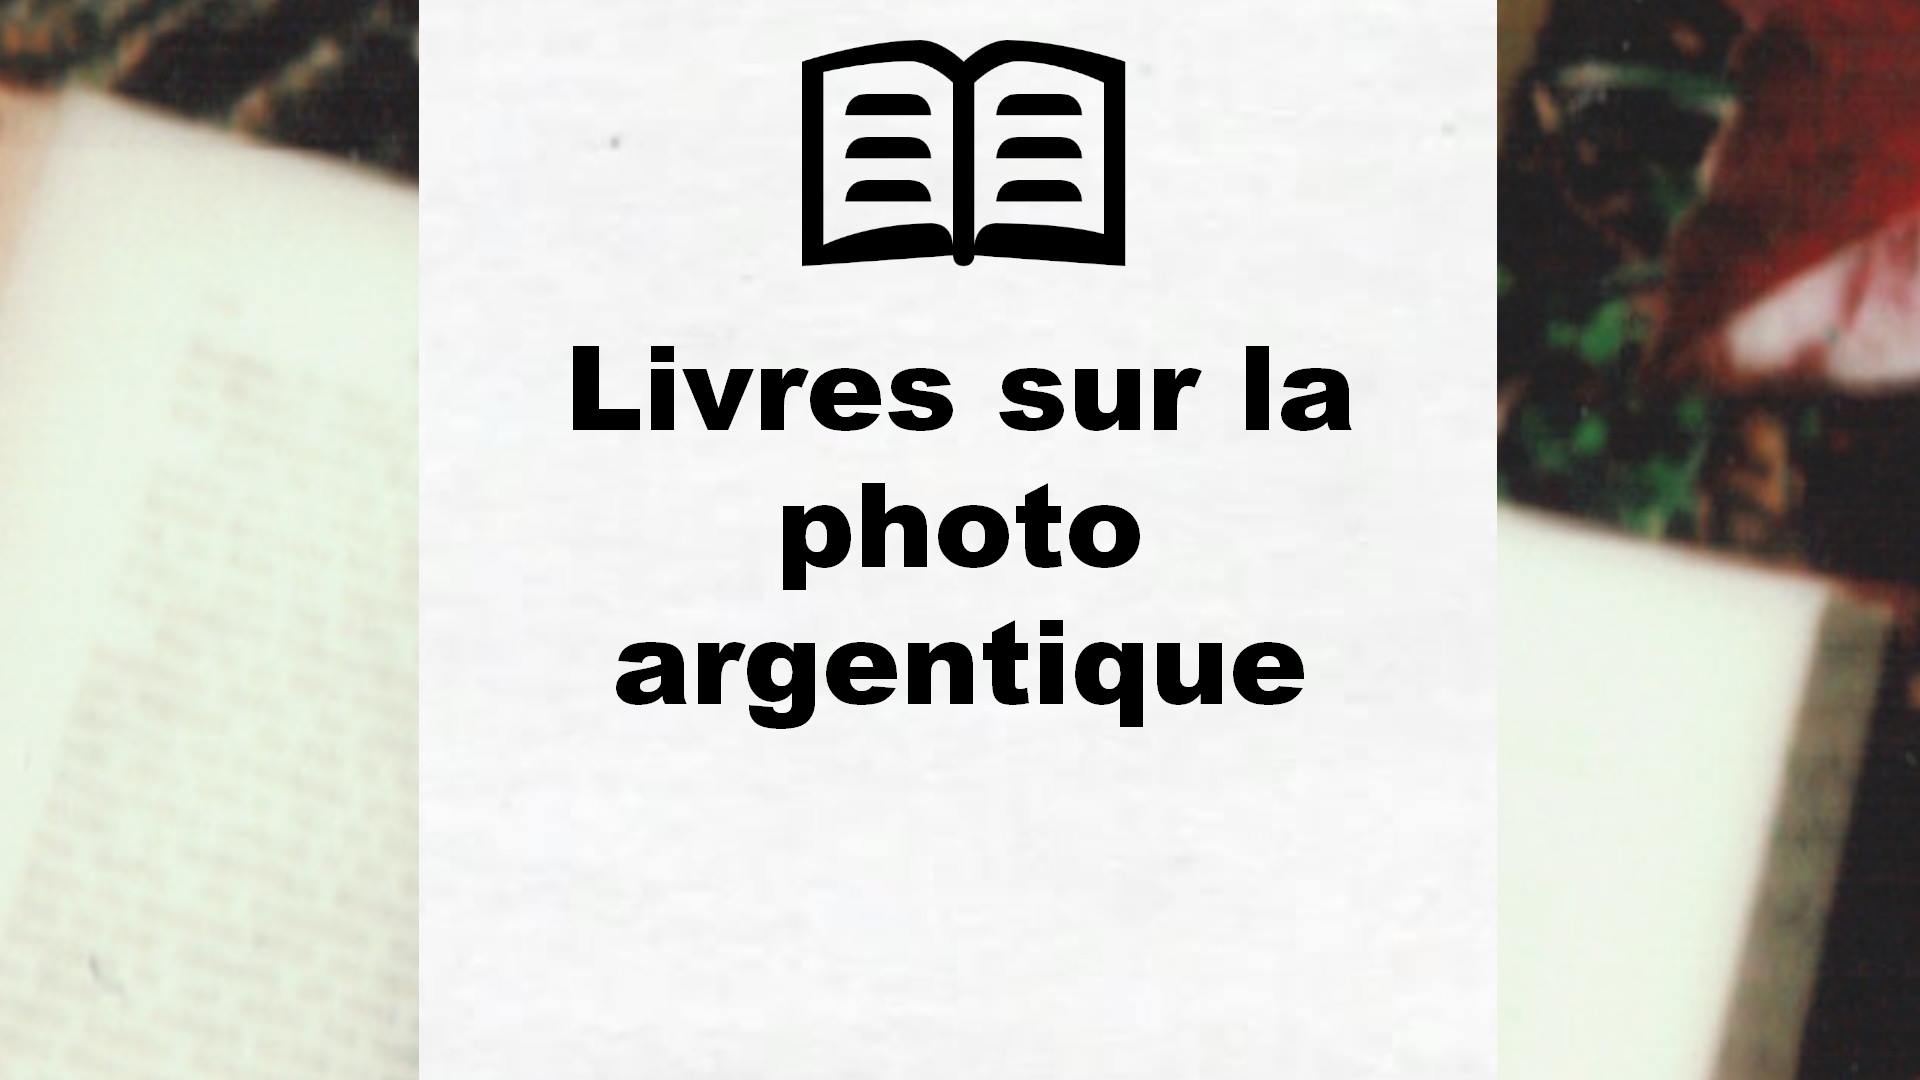 Livres sur la photo argentique